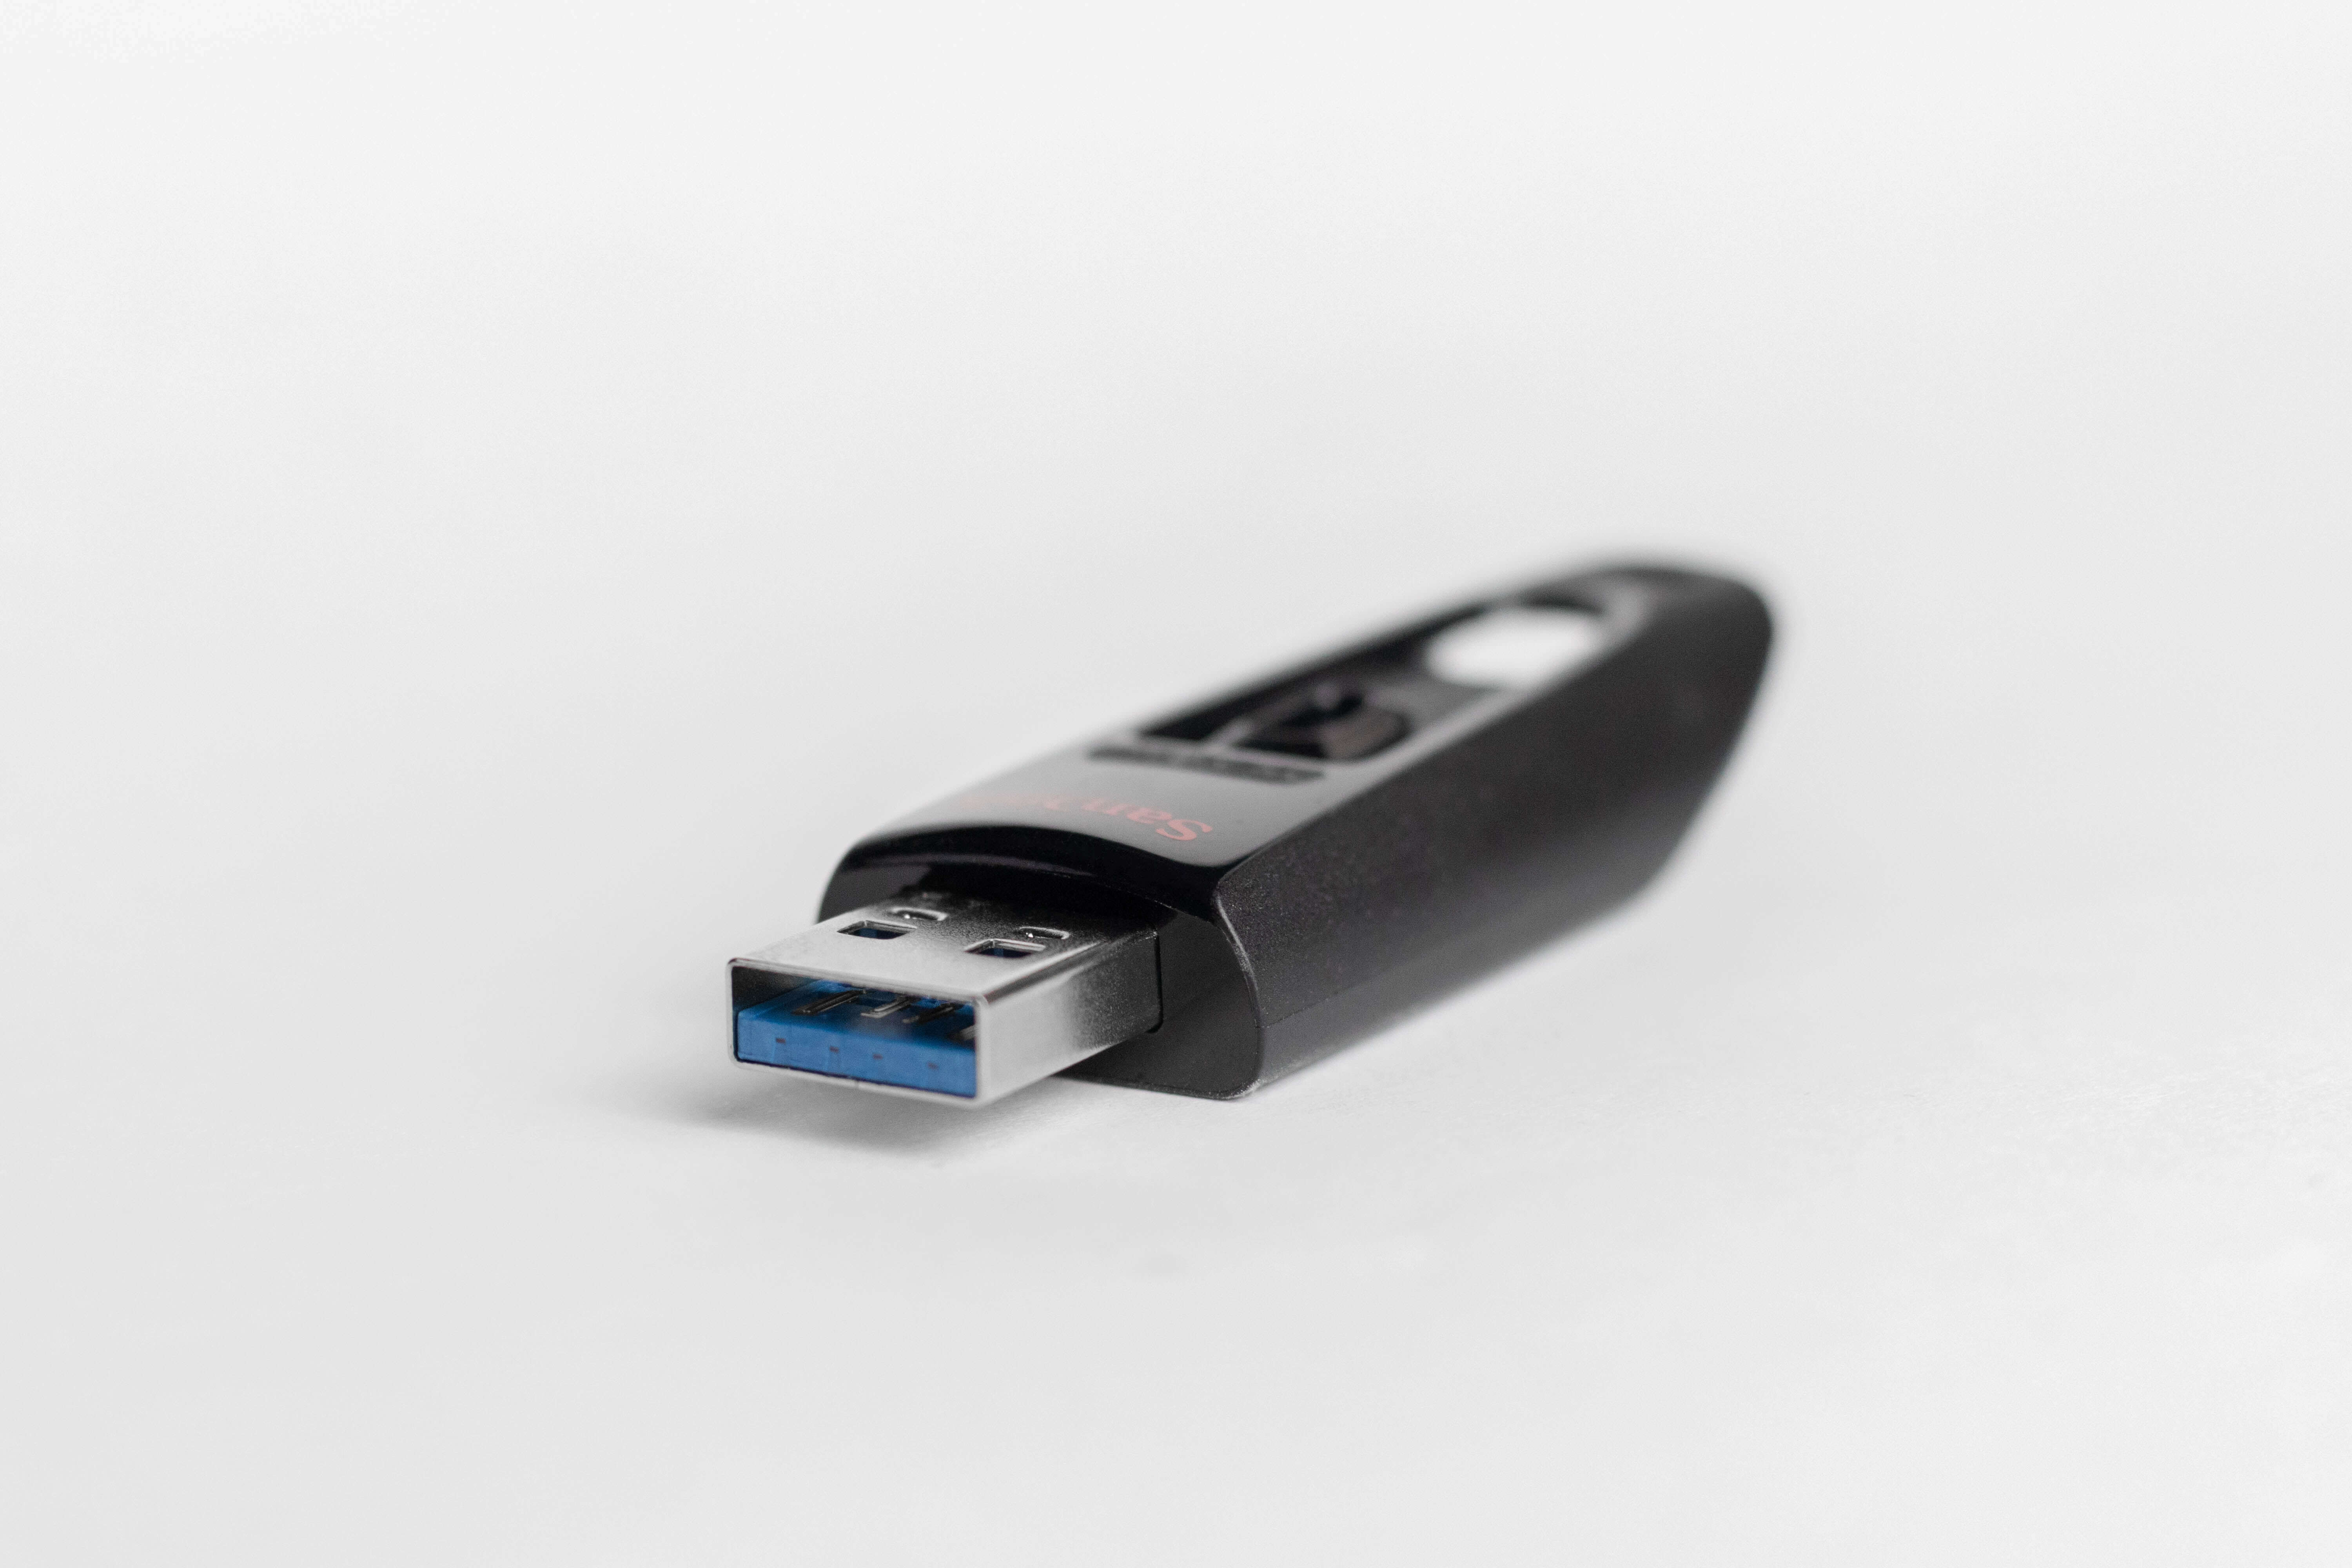 포맷된 USB 드라이브에서 데이터를 복구하는 방법